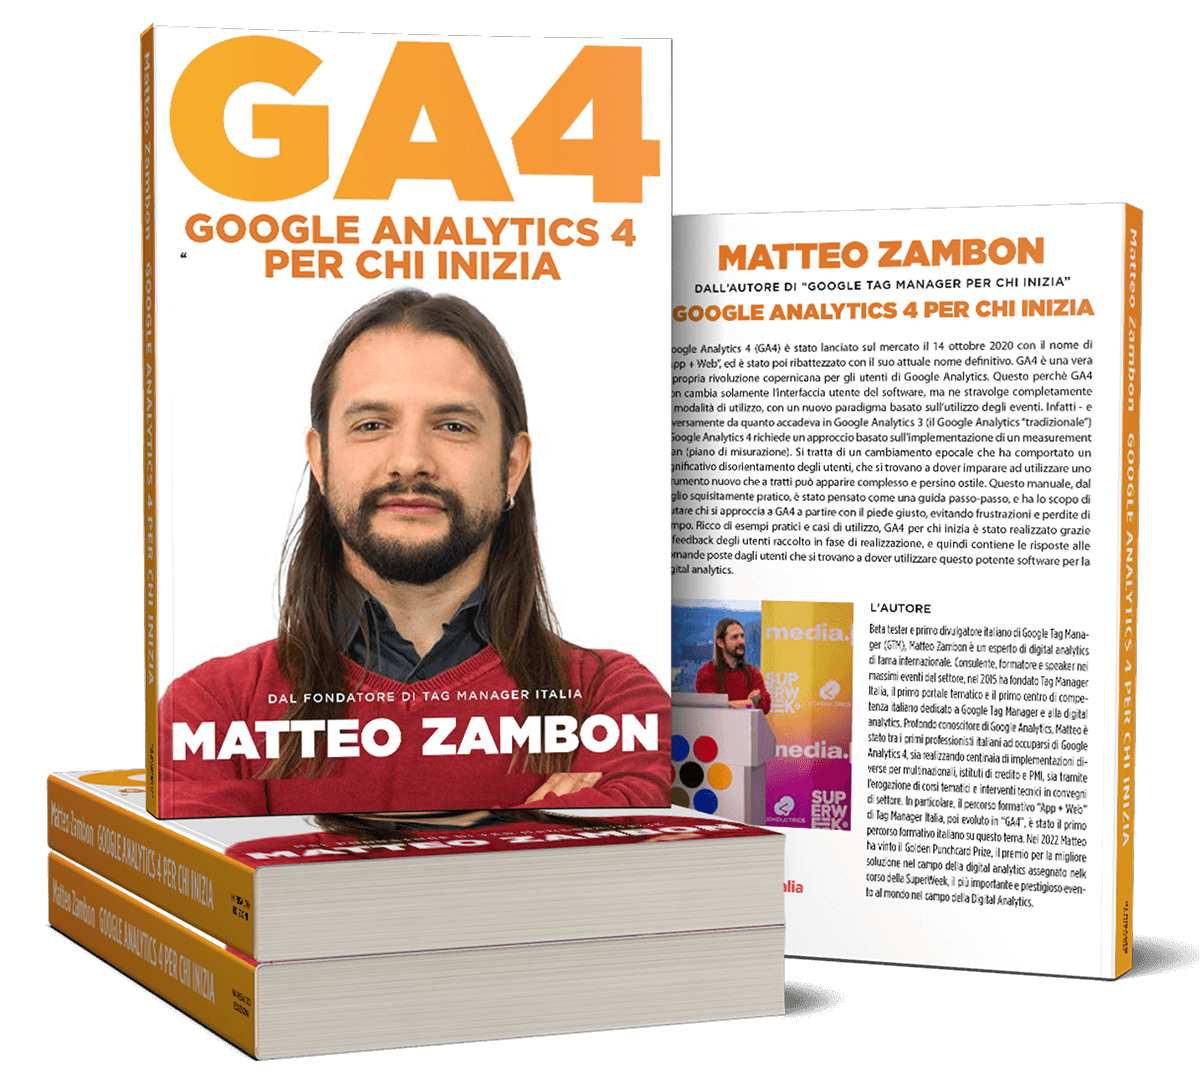 Google Analytics 4 per chi inizia nuovo manuale di Matteo Zambon